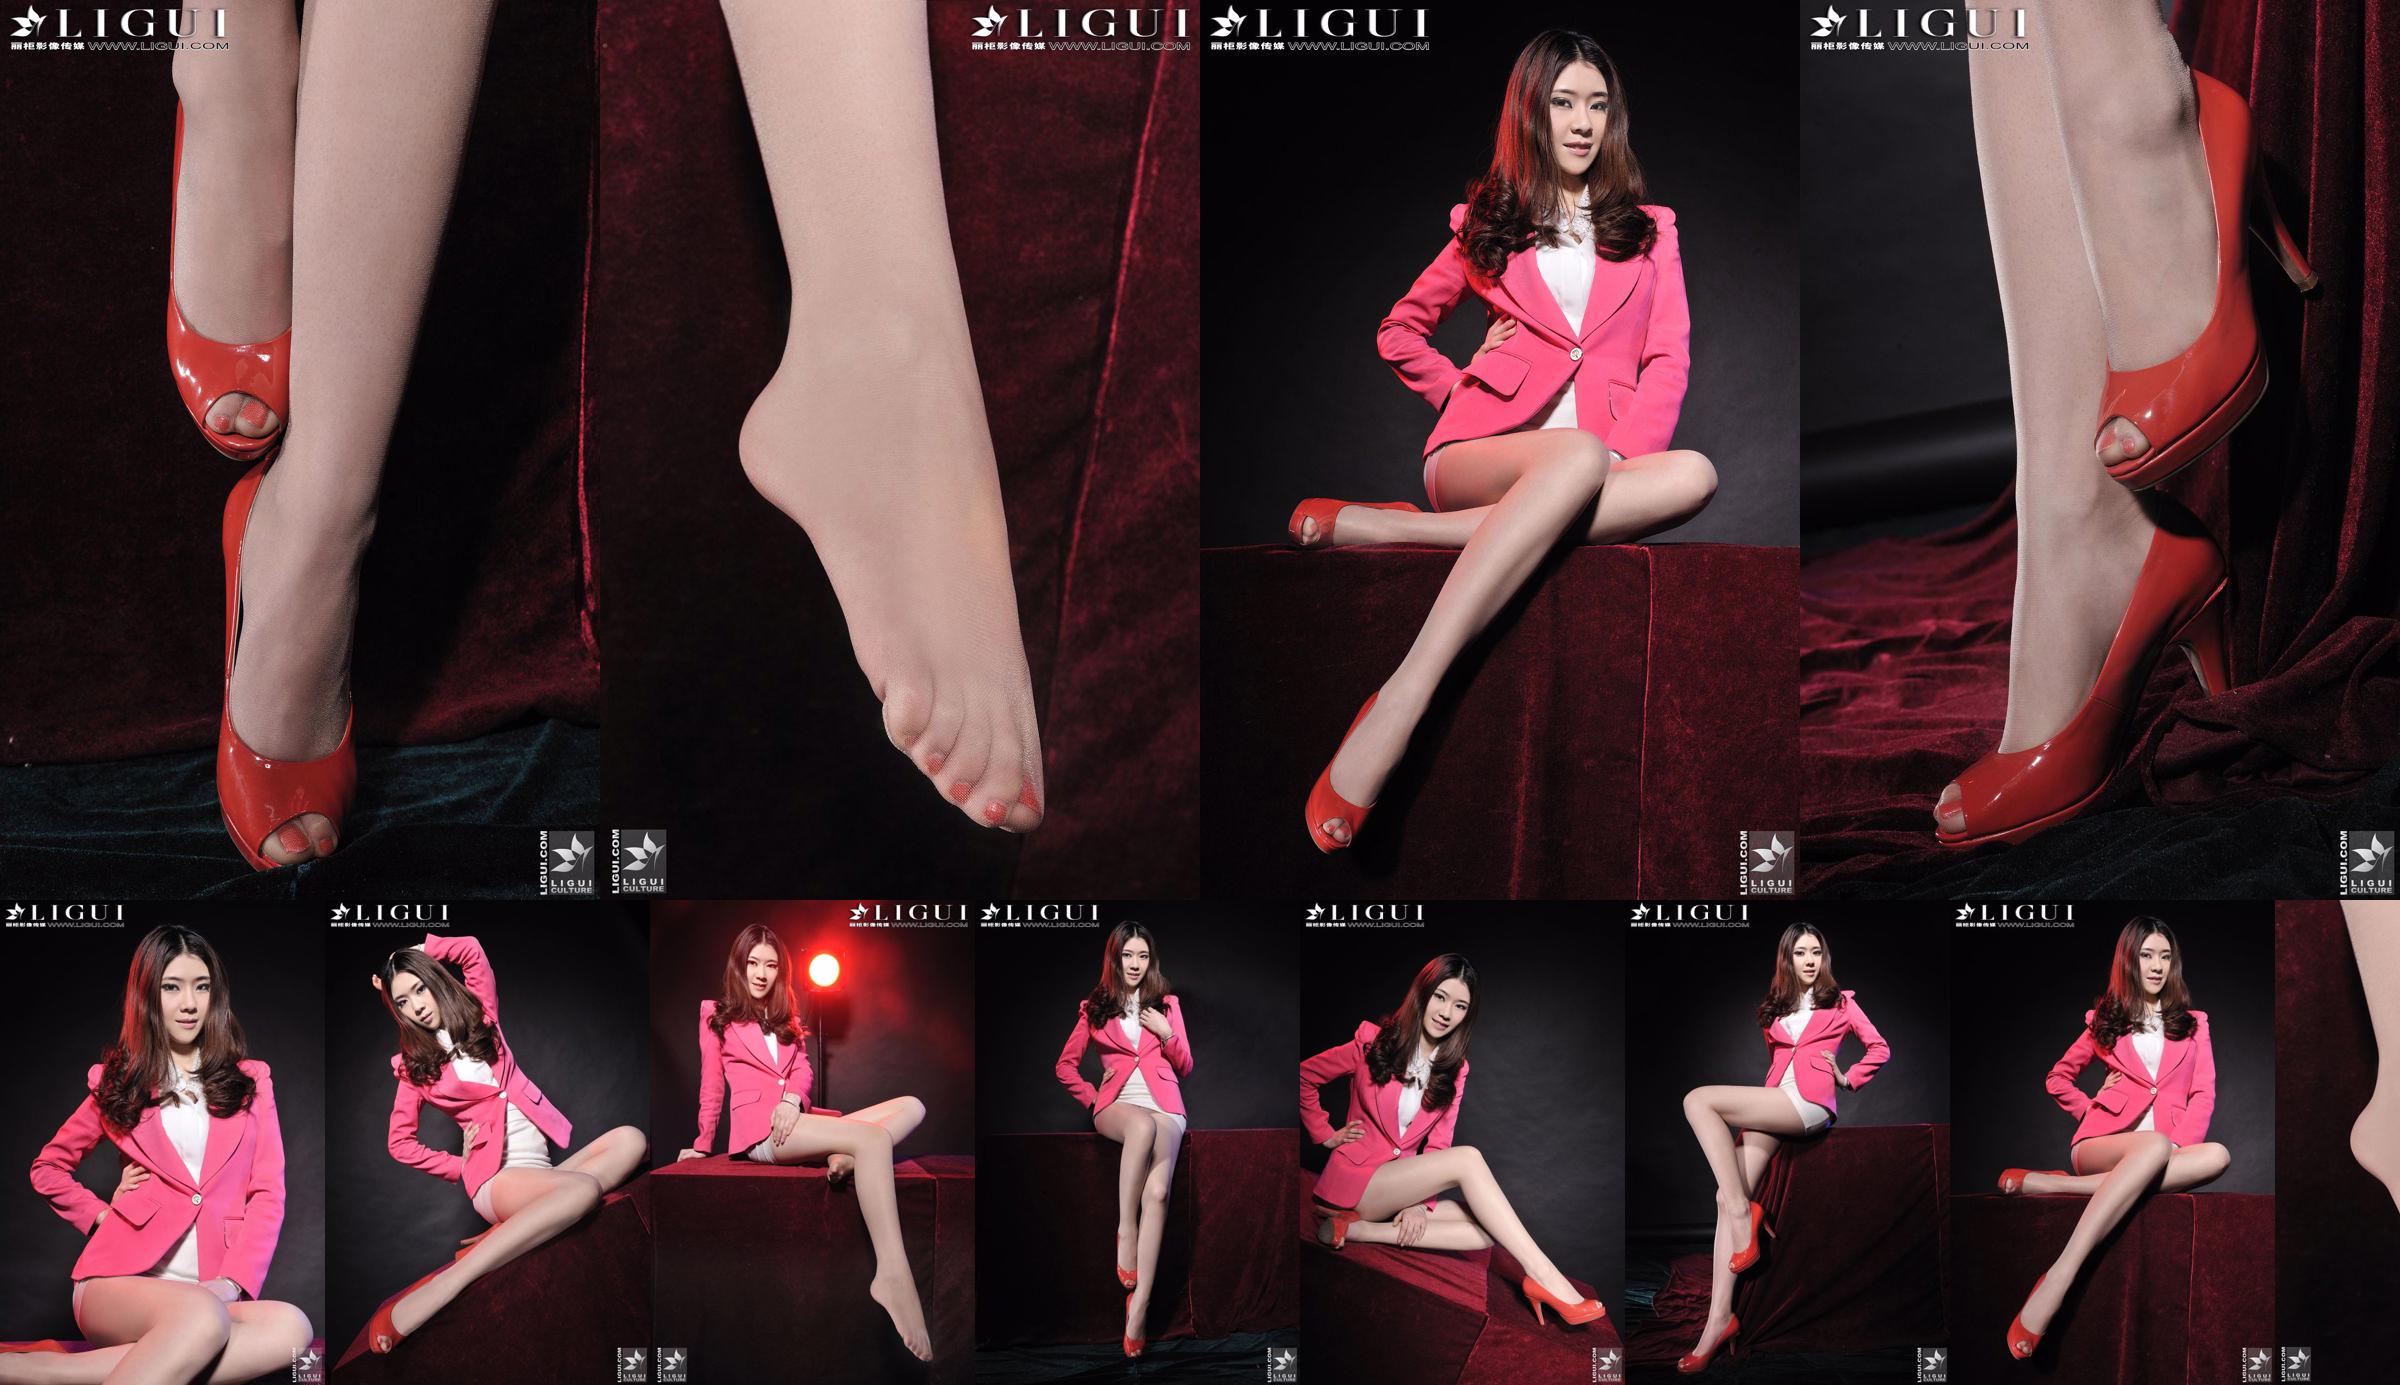 นางแบบ Chenchen "สาวส้นสูงสีแดง" [丽柜 LiGui] รูปถ่ายขาสวยและเท้าหยก No.a7bf0a หน้า 1